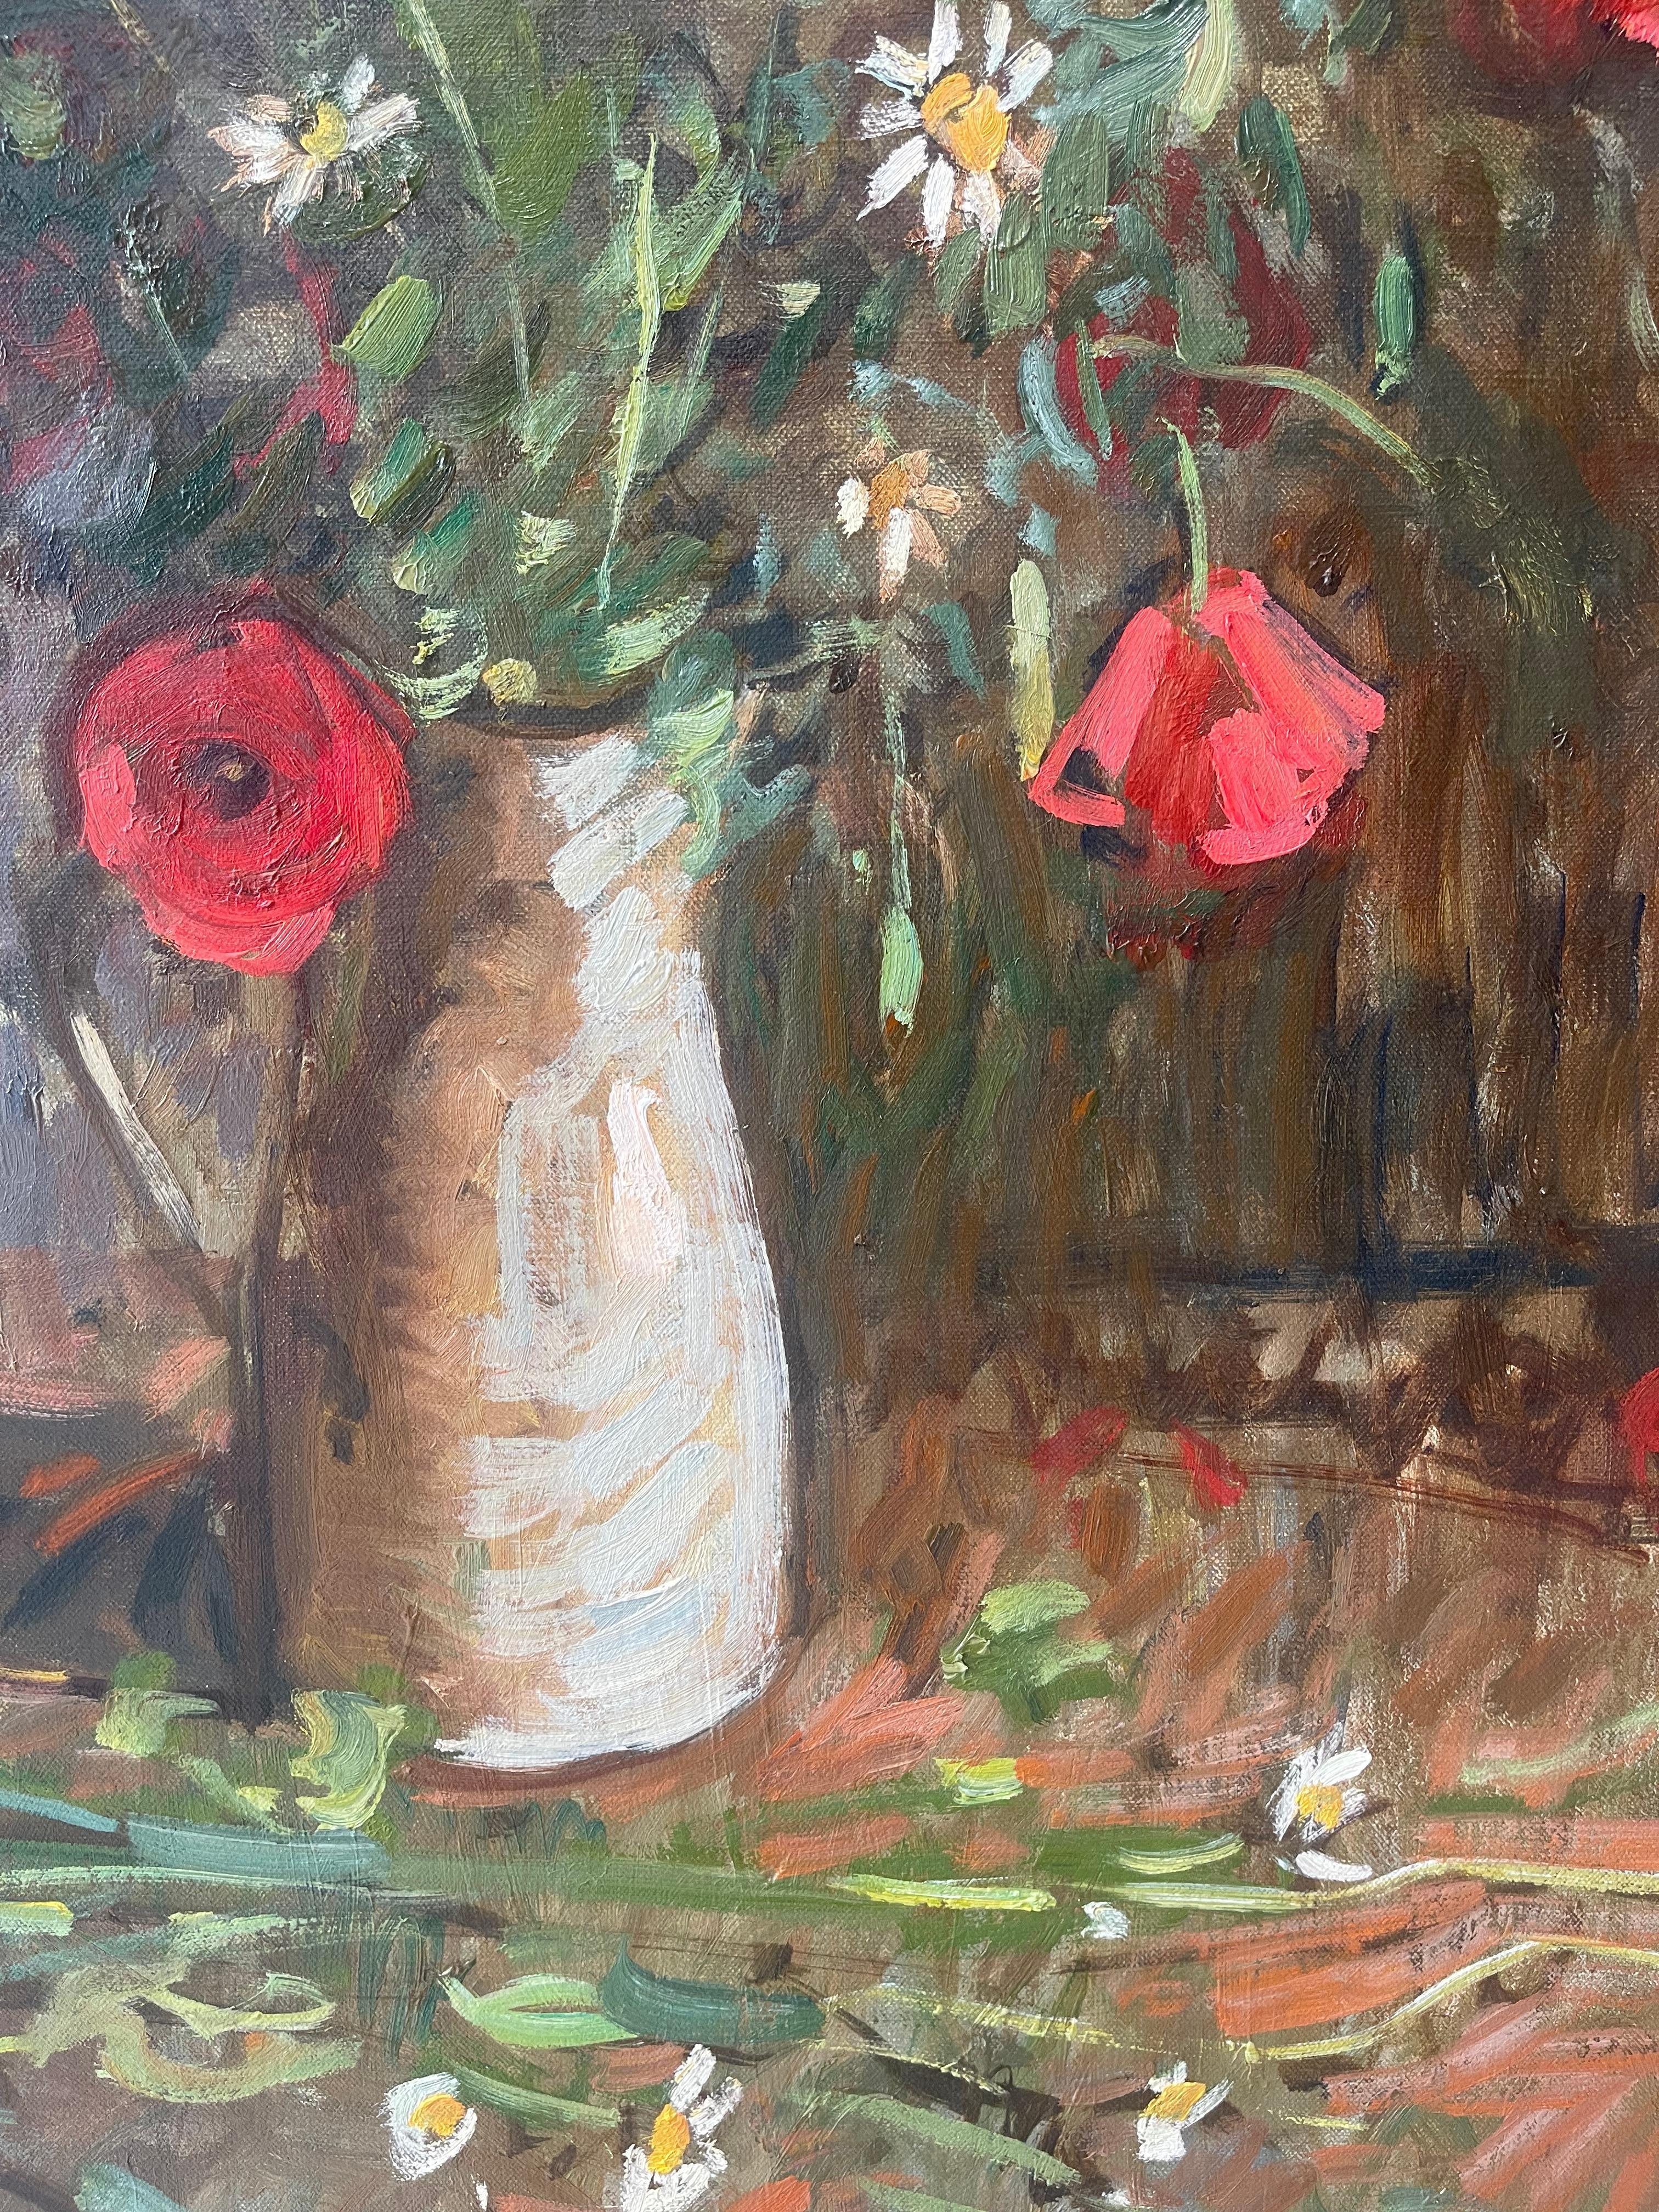 Une peinture à l'huile de fleurs sauvages de Toscane (coquelicots rouges, camomille et marguerites), par l'impressionniste américain contemporain Ben Fenske. 

Dimensions de la peinture : 35.5 x 29.5 pouces
Dimensions encadrées : 41 x 35